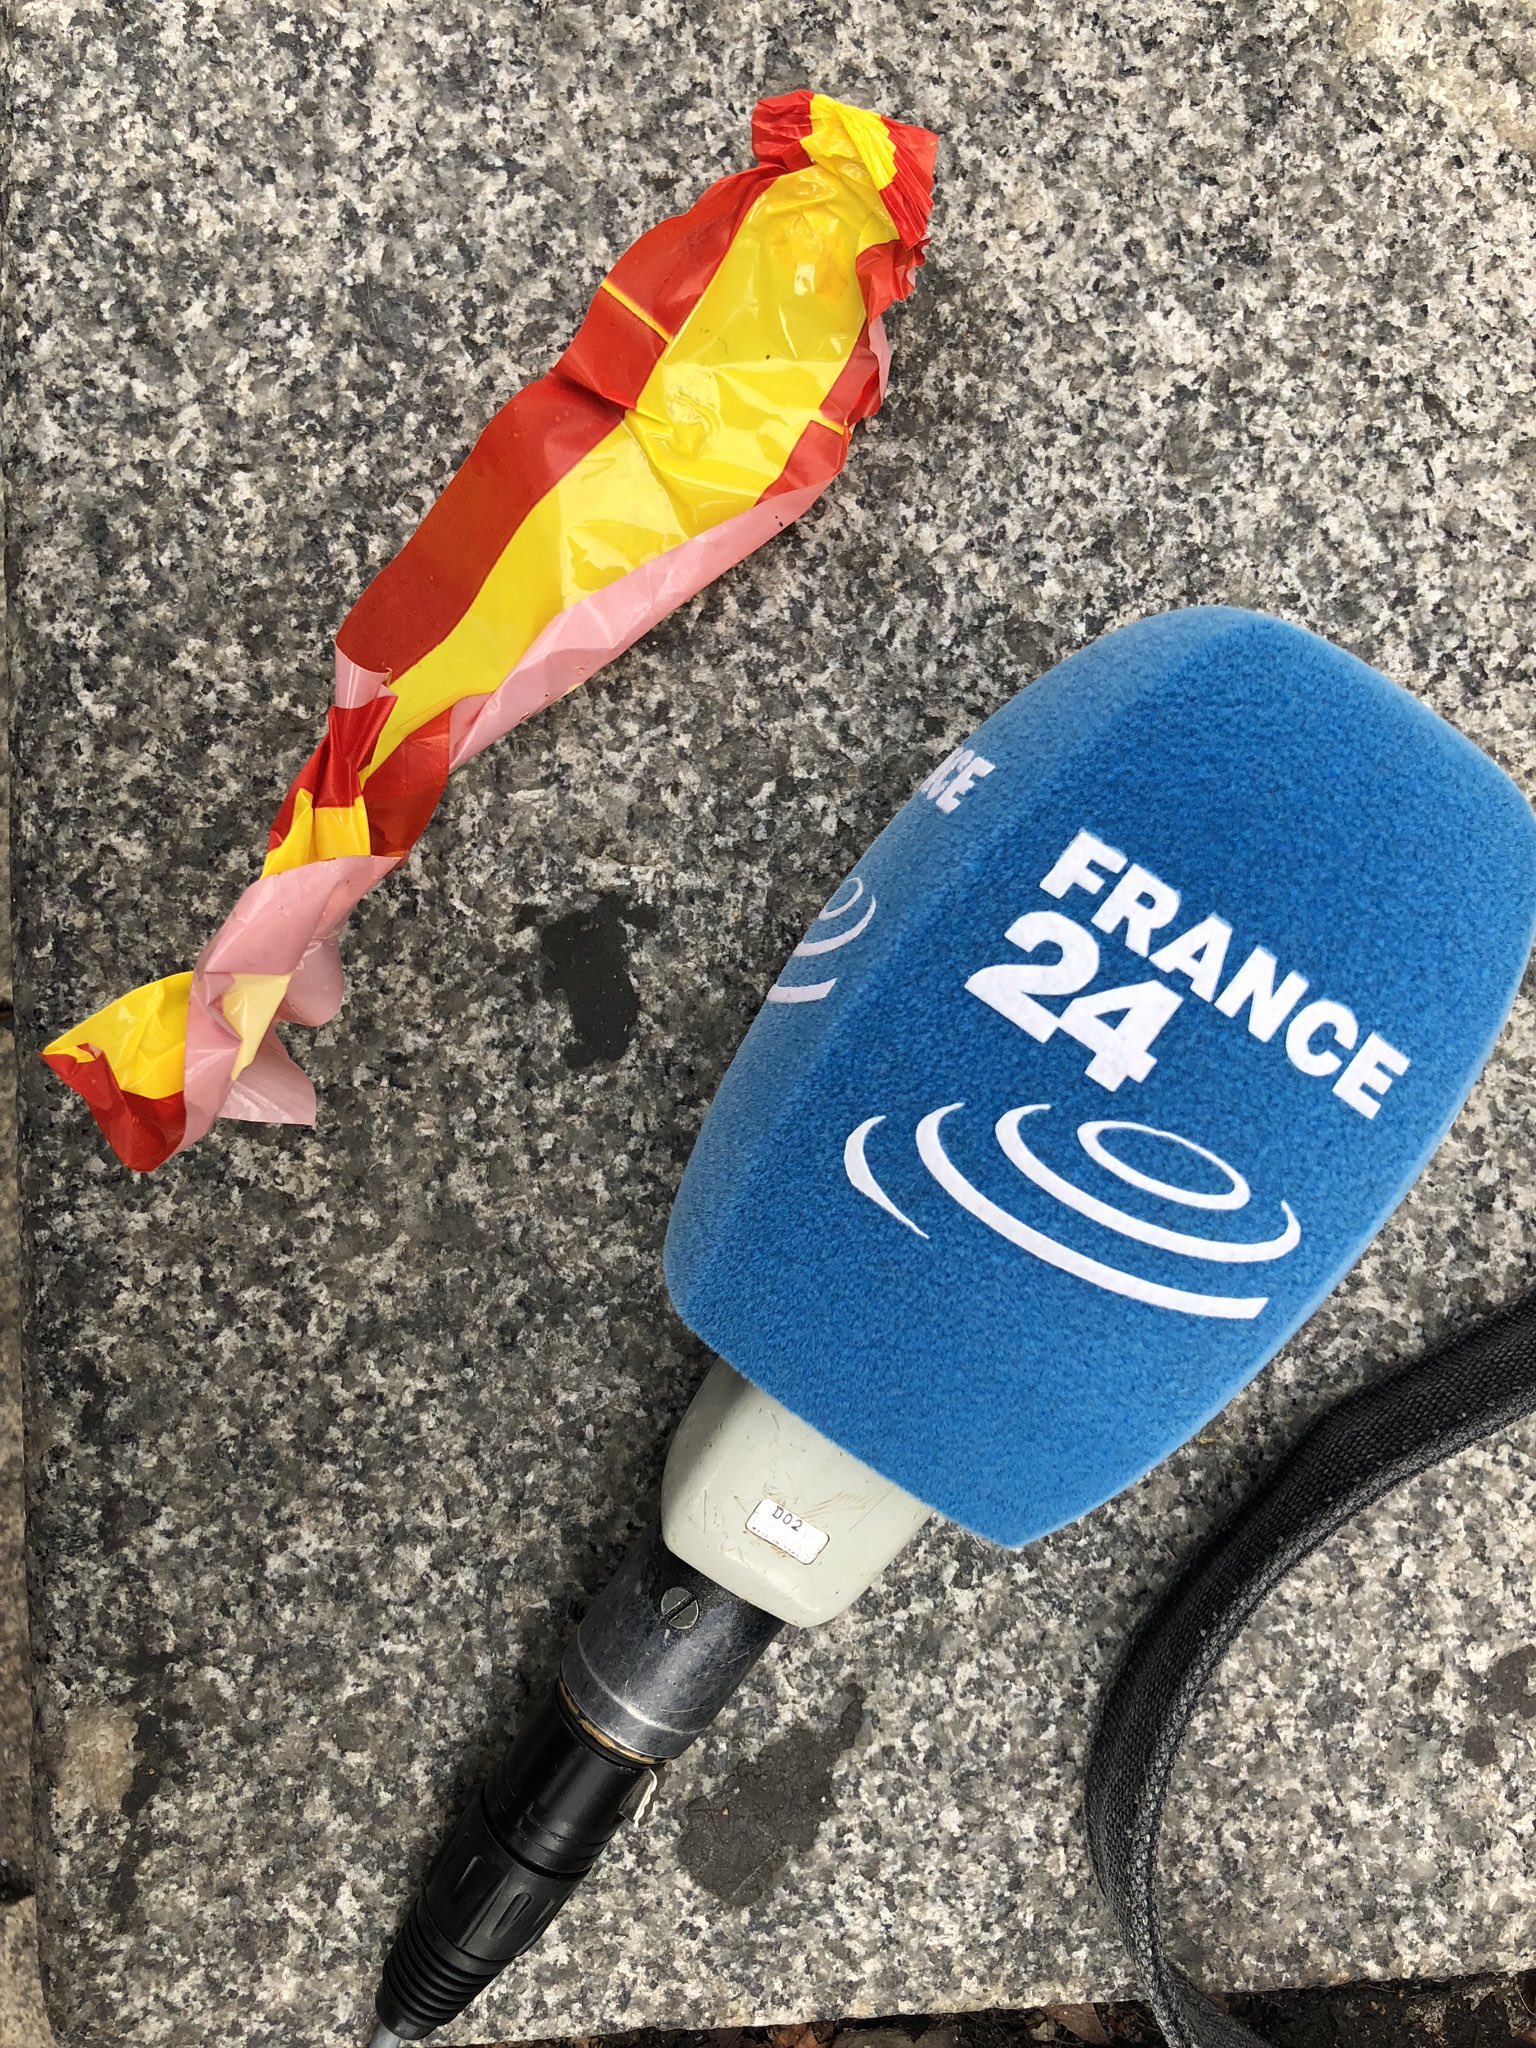 Una periodista francesa, acosada por españolistas